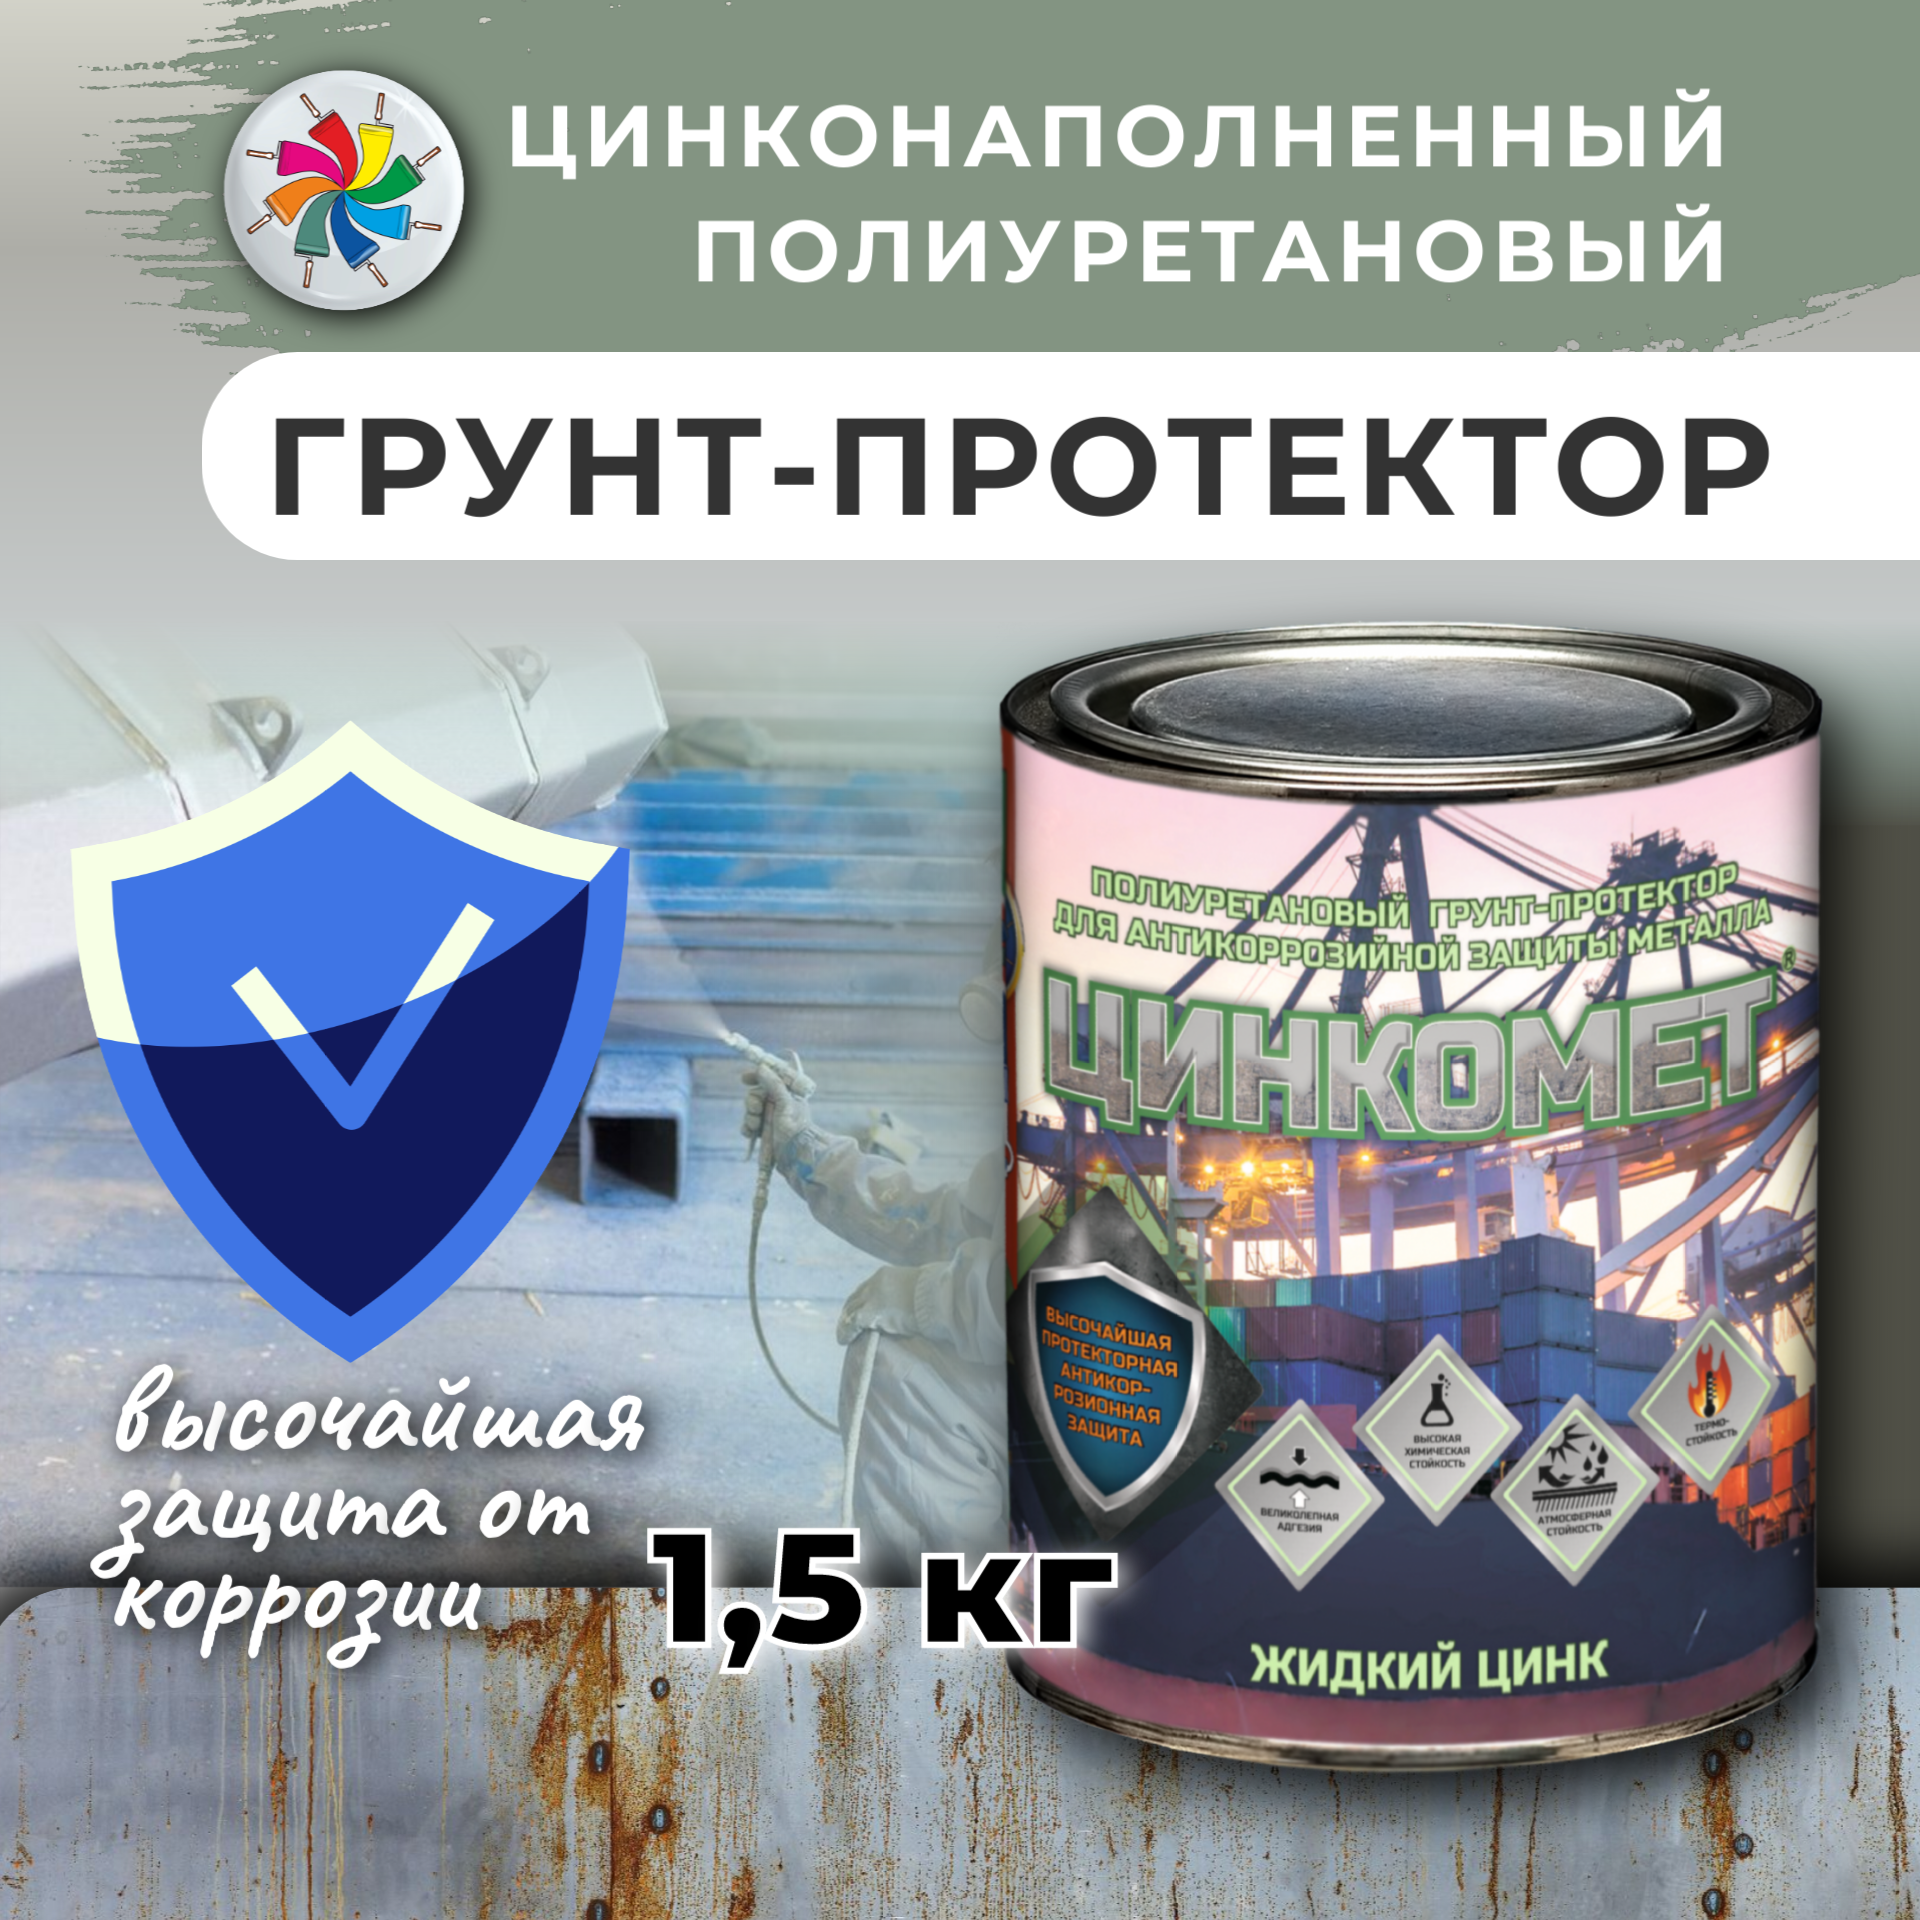 Цинкомет цинконаполненный полиуретановый грунт-протектор для антикоррозионной защиты металла, серый, 1,5кг. — купить в интернет-магазине по низкой цене на Яндекс Маркете